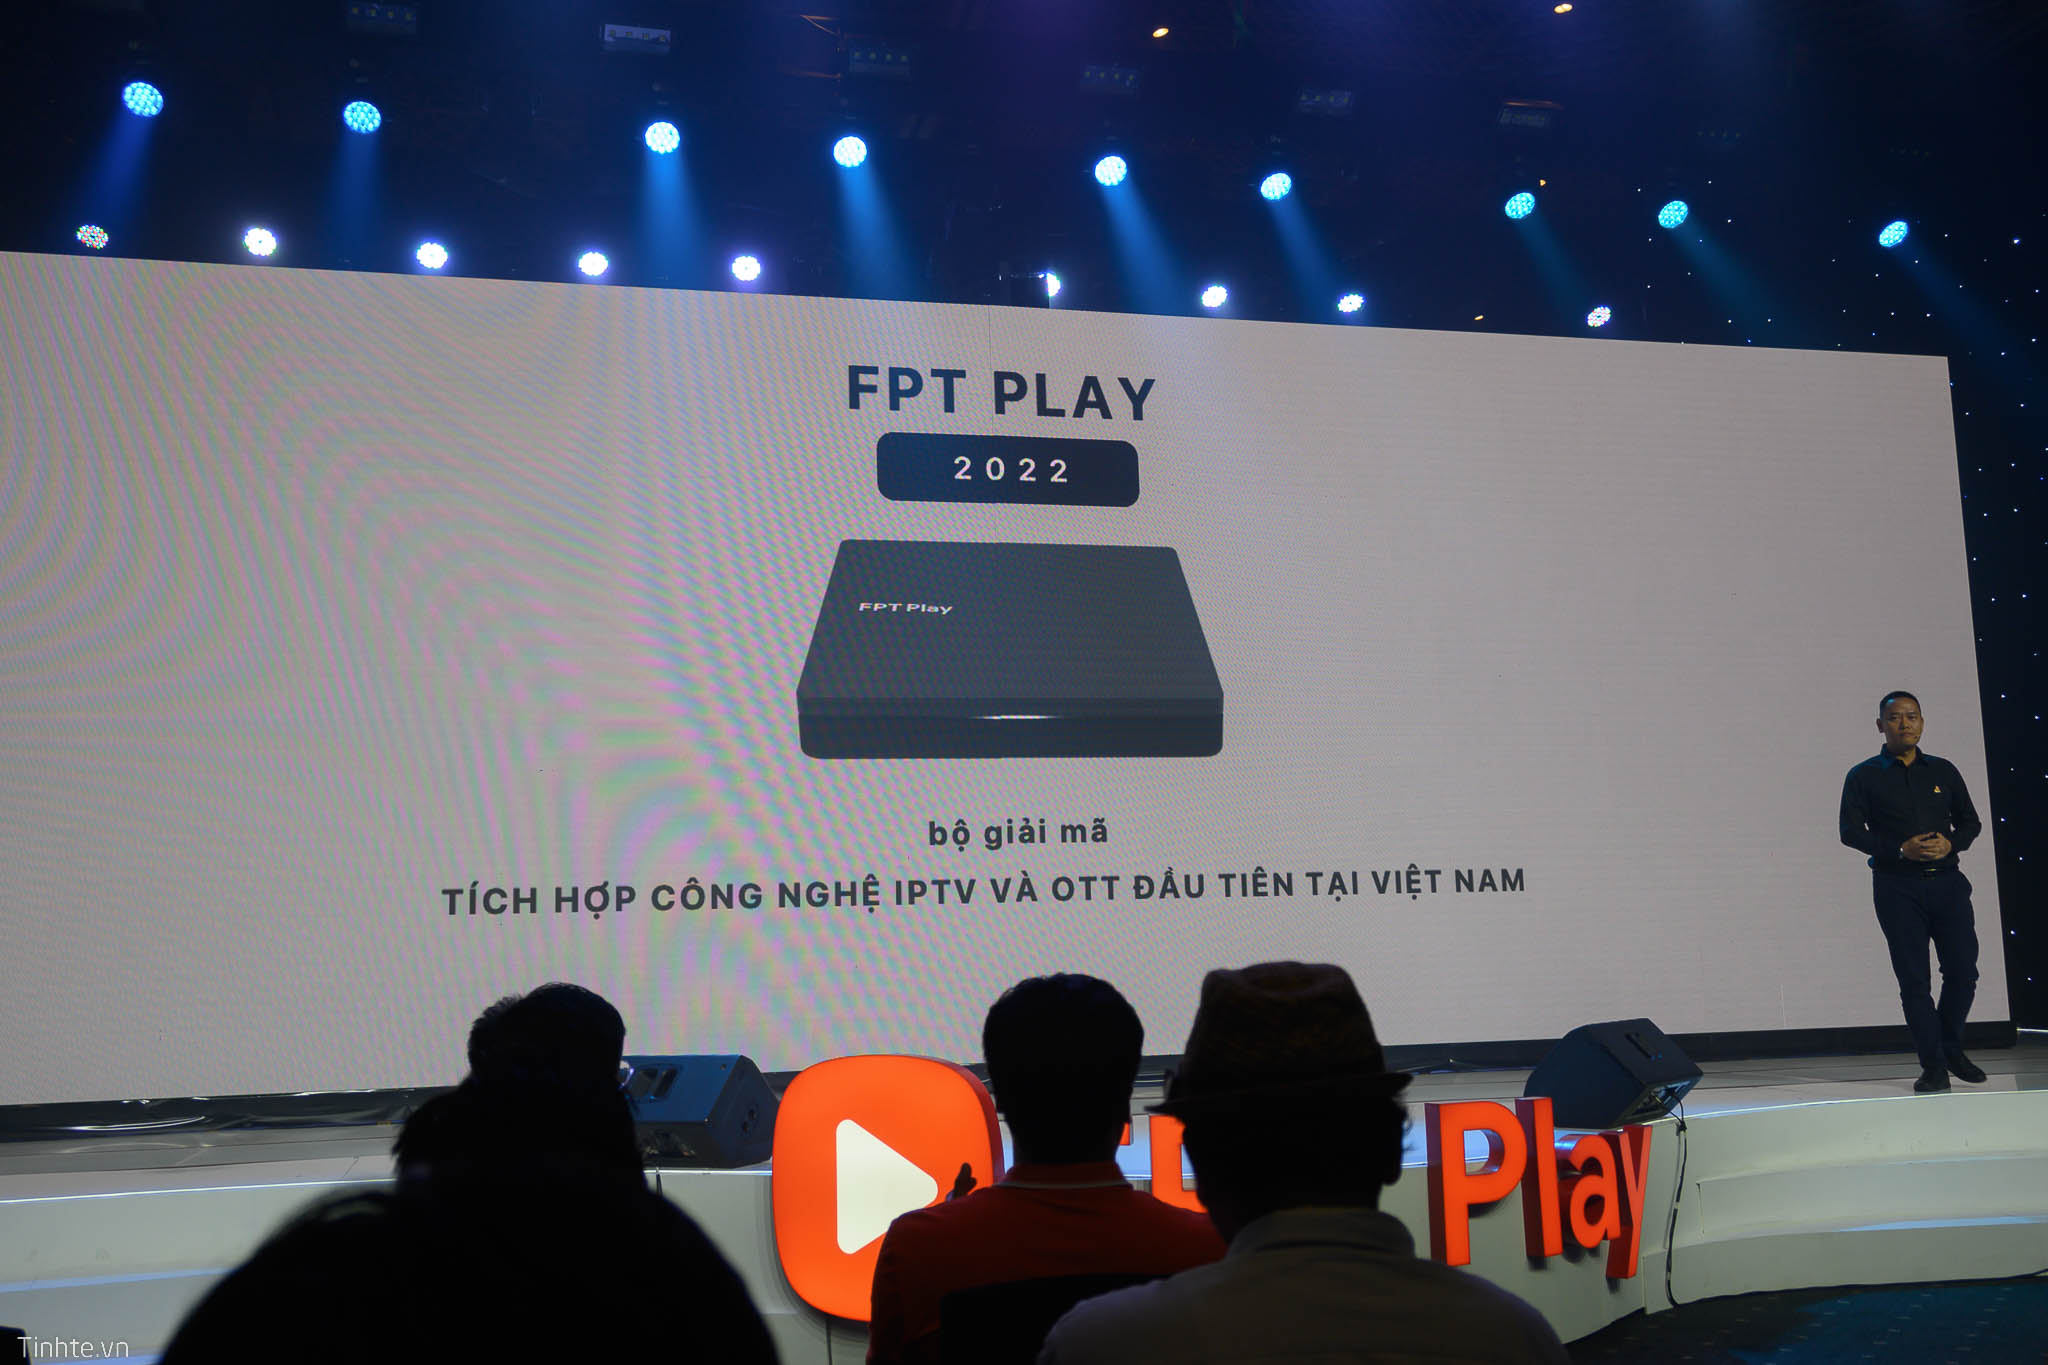 FPT Play 2022 ra mắt: Android TV box tích hợp IPTV, nâng cấp cấu hình, nhiều kết nối